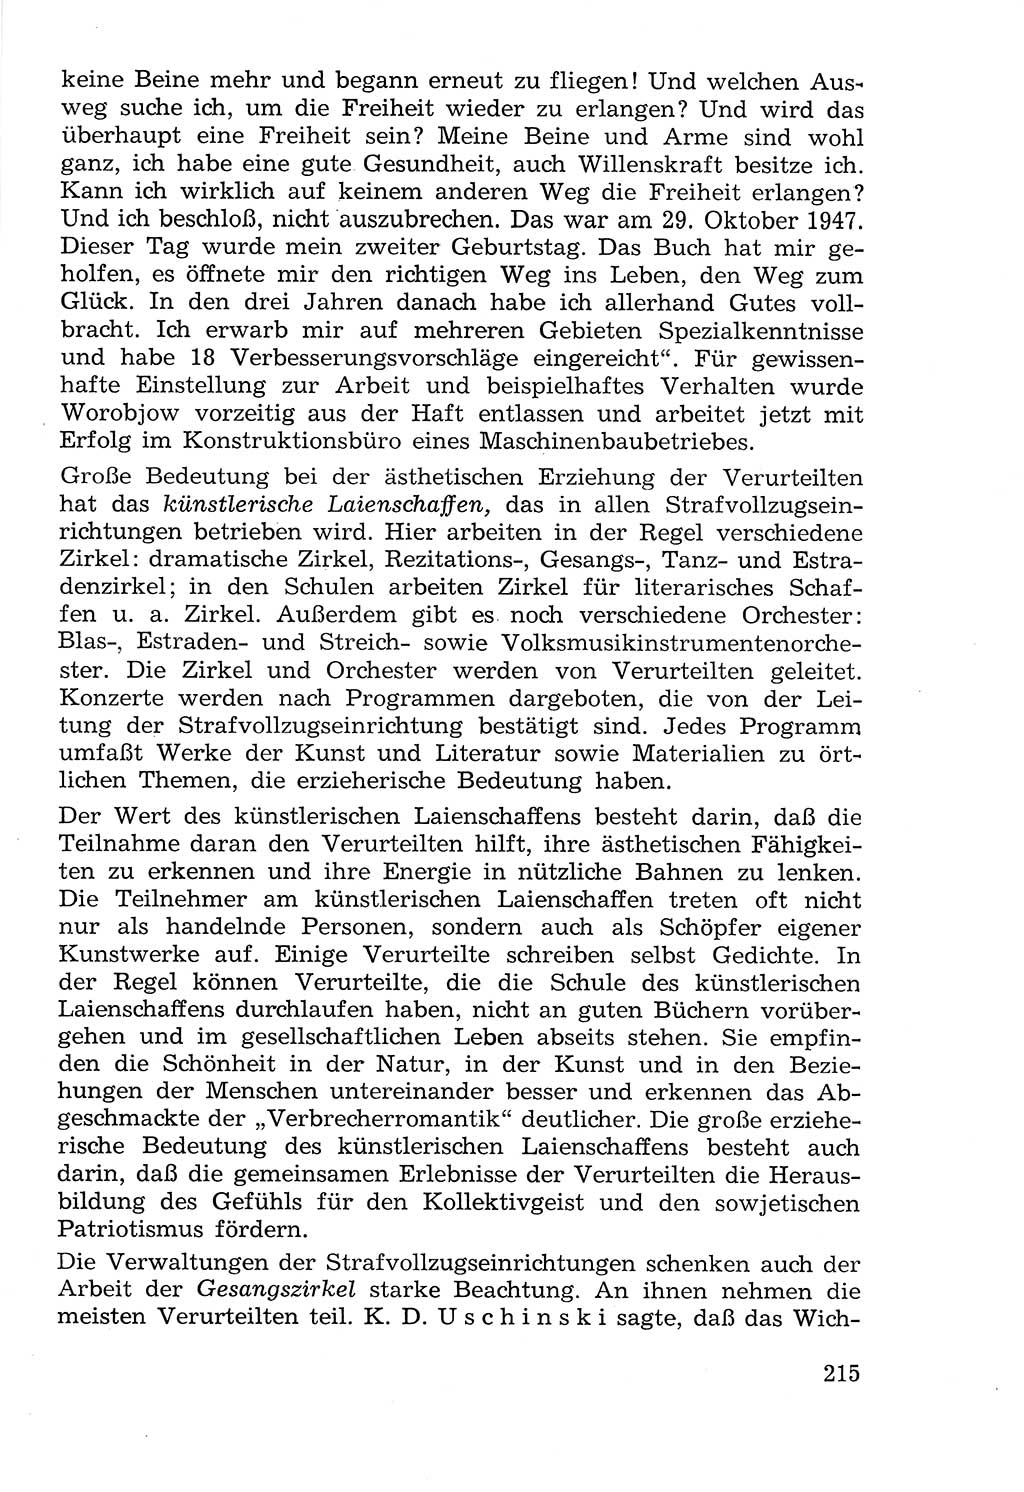 Lehrbuch der Strafvollzugspädagogik [Deutsche Demokratische Republik (DDR)] 1969, Seite 215 (Lb. SV-Pd. DDR 1969, S. 215)